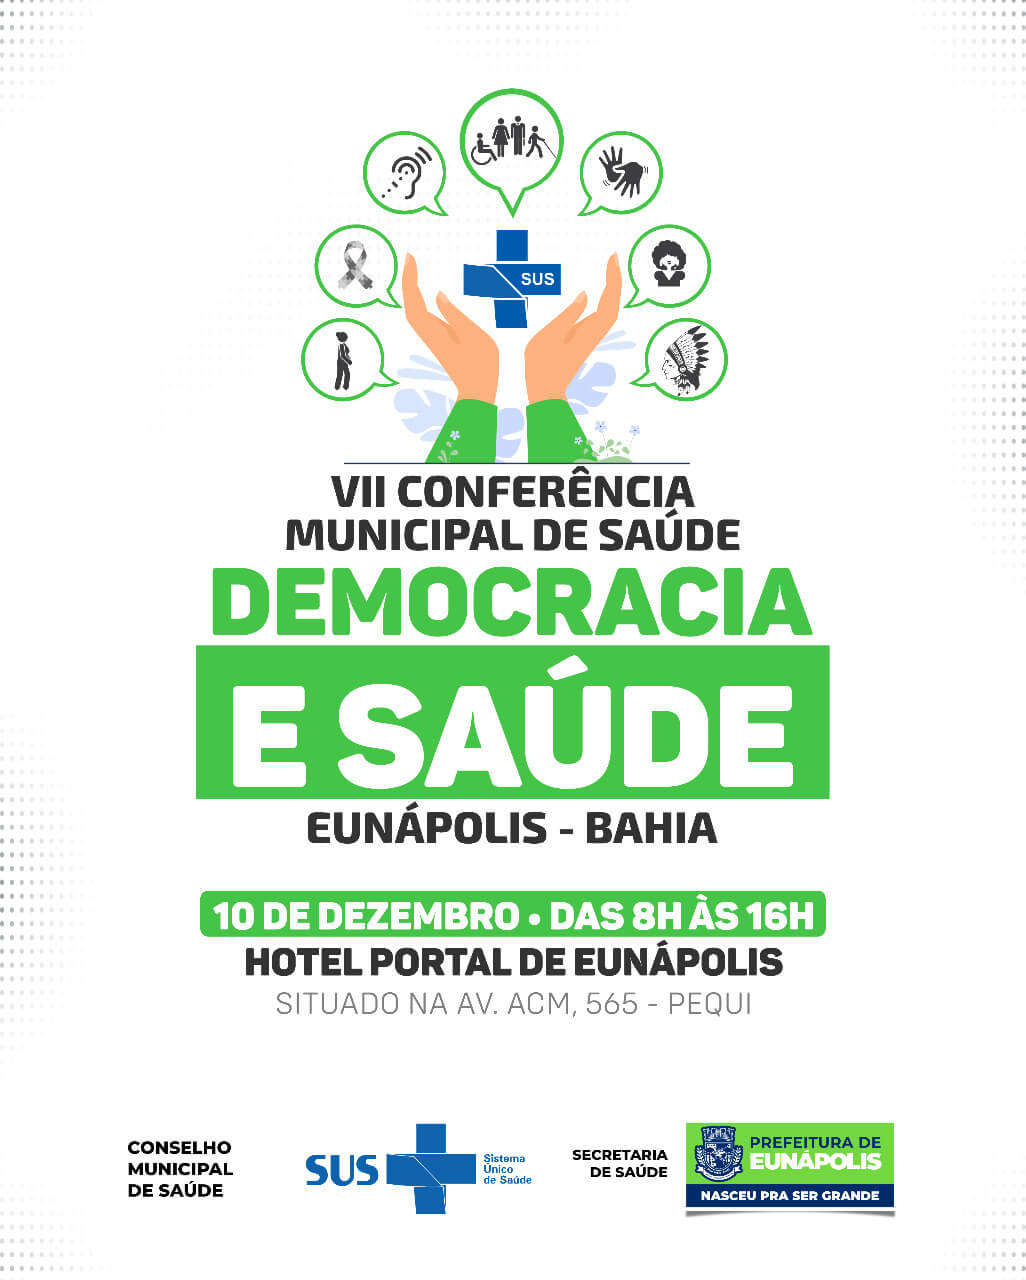 VII Conferência Municipal de Saúde acontece em Eunápolis nesta sexta-feira 23